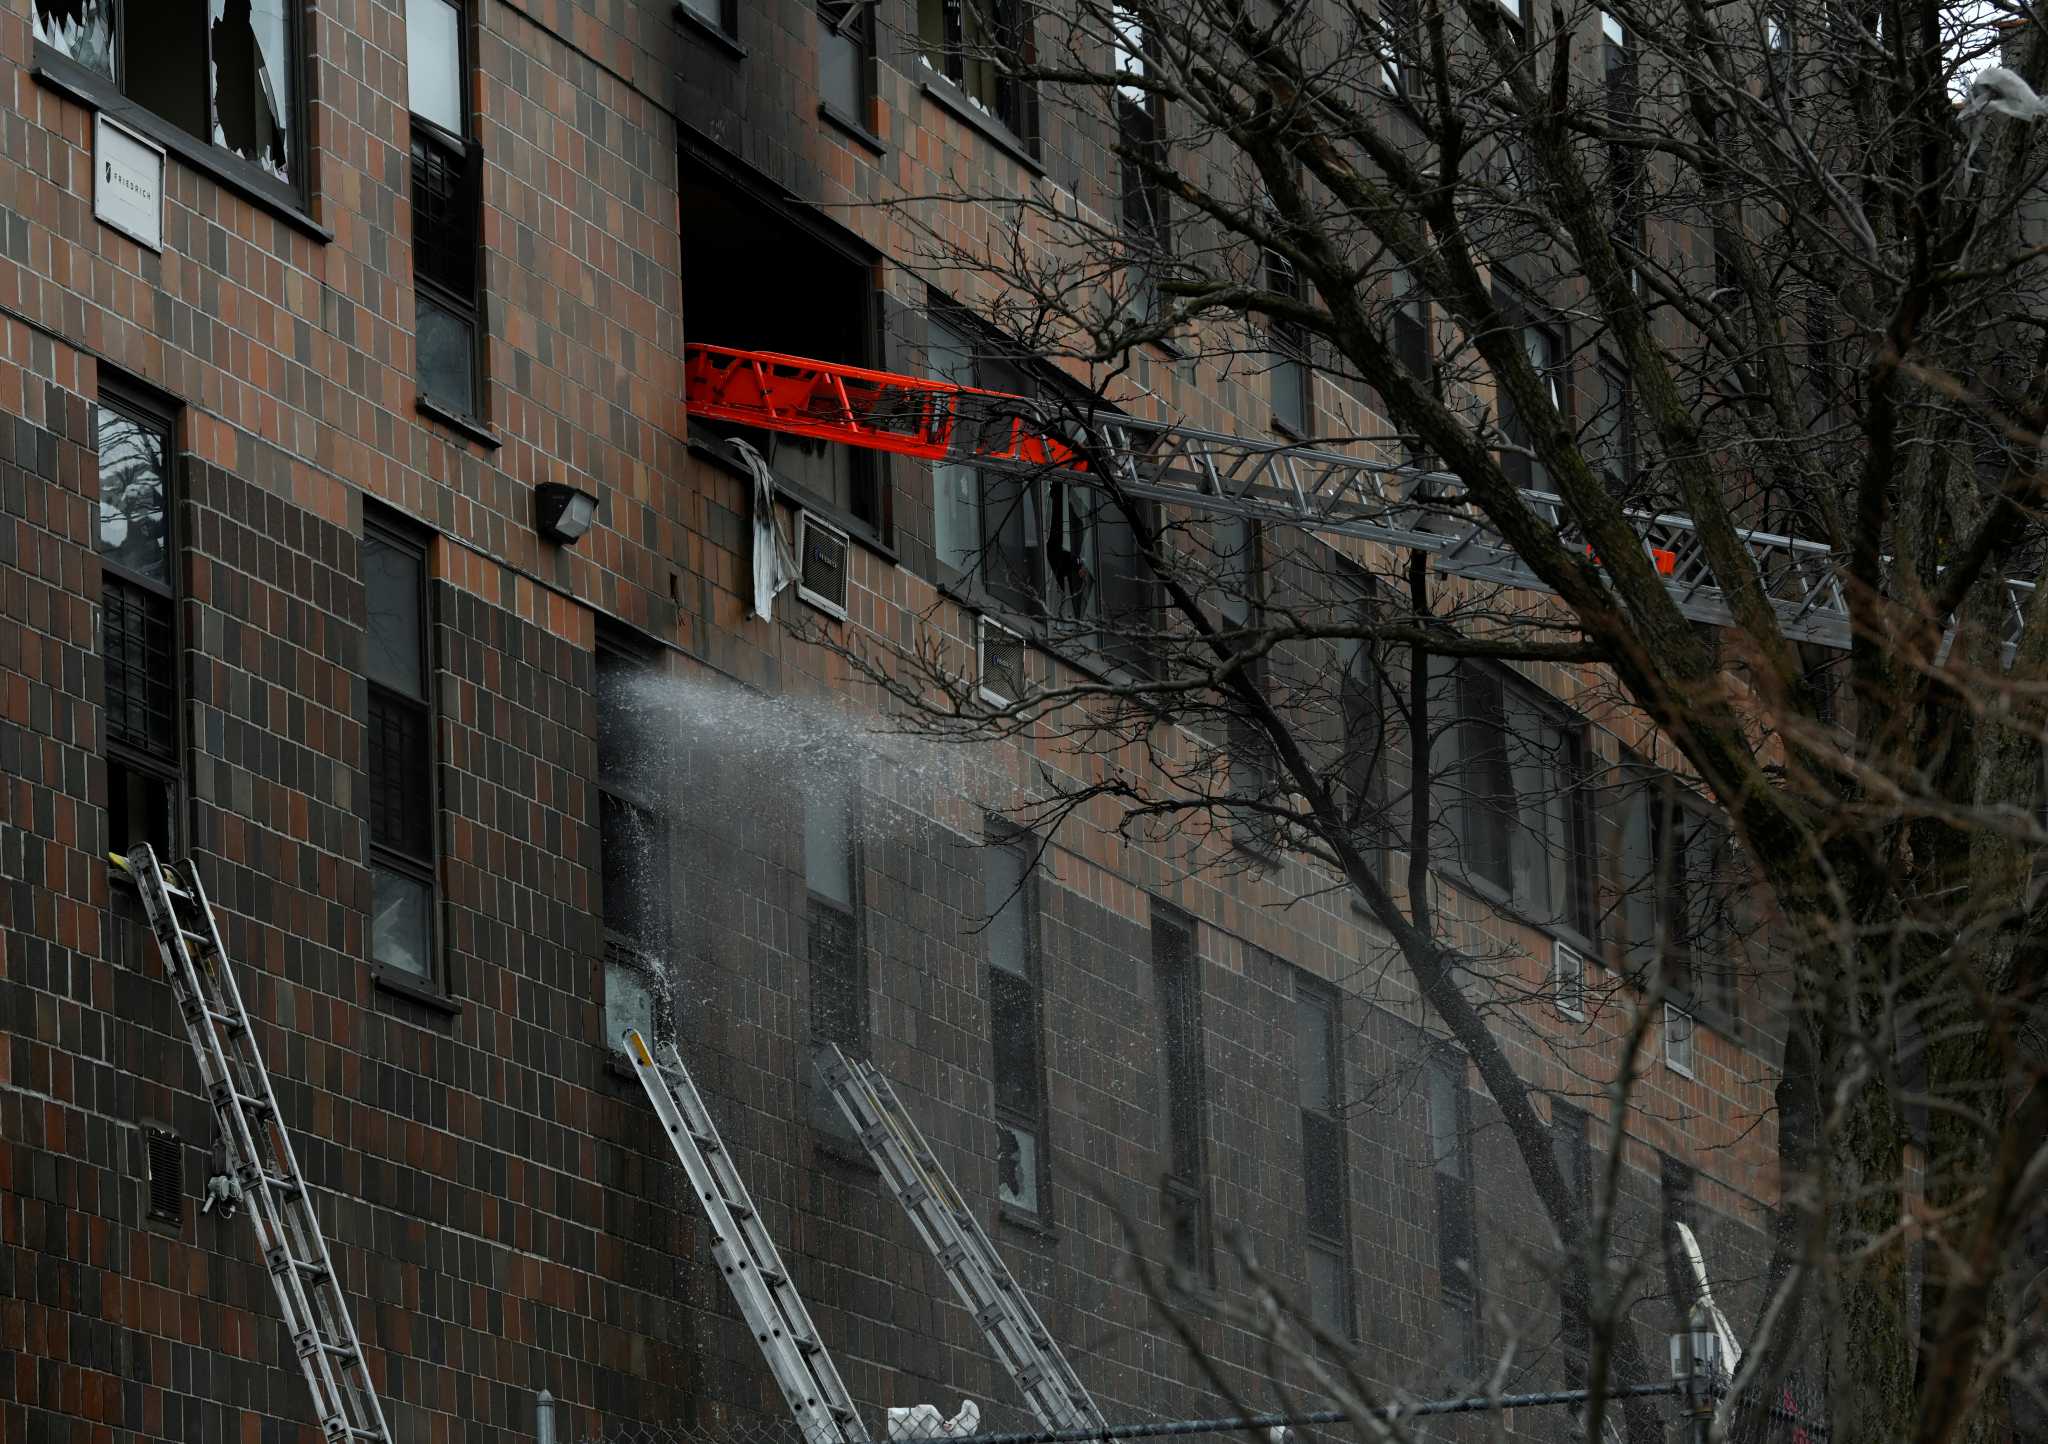 Νέα Υόρκη - Μια ανοικτή πόρτα συνέβαλε στην εξάπλωση της φωτιάς στο Μπρονξ